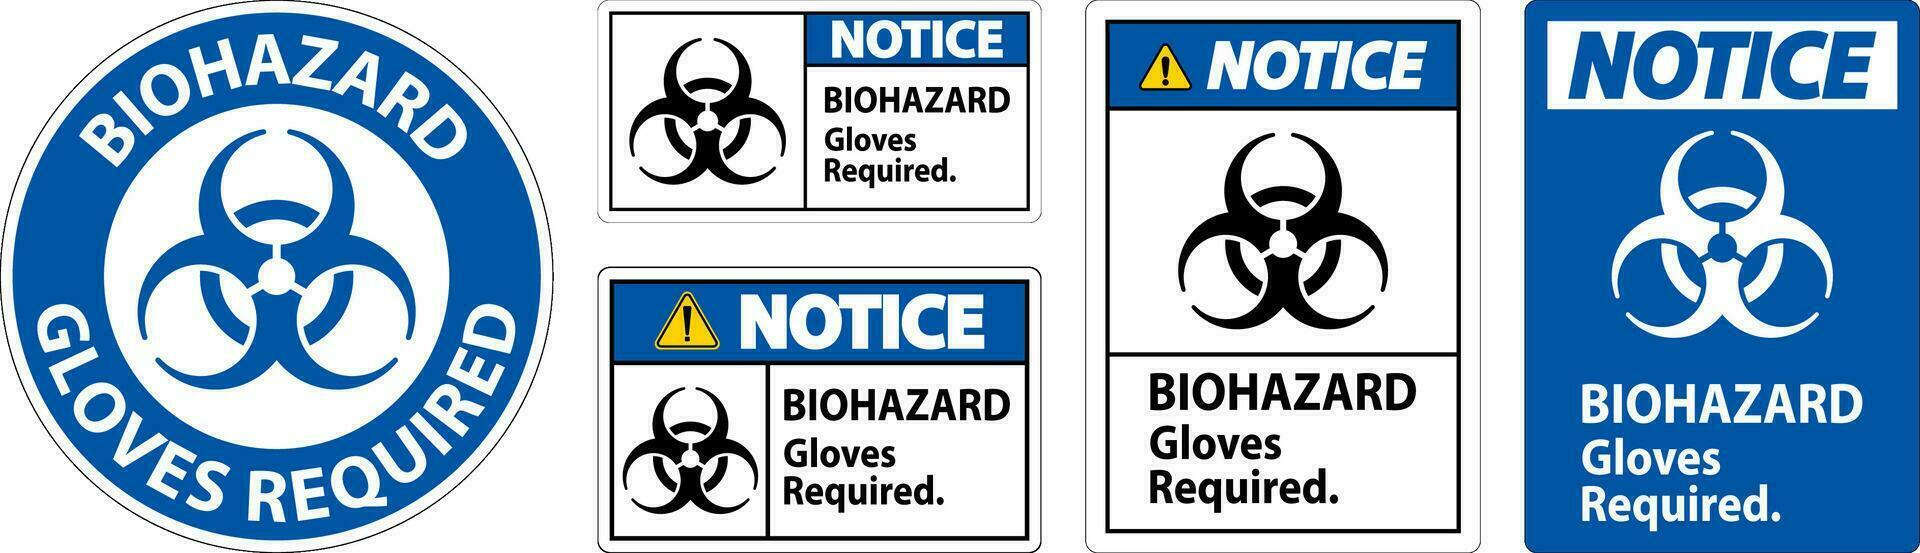 biohazard merk op etiket biohazard handschoenen verplicht vector